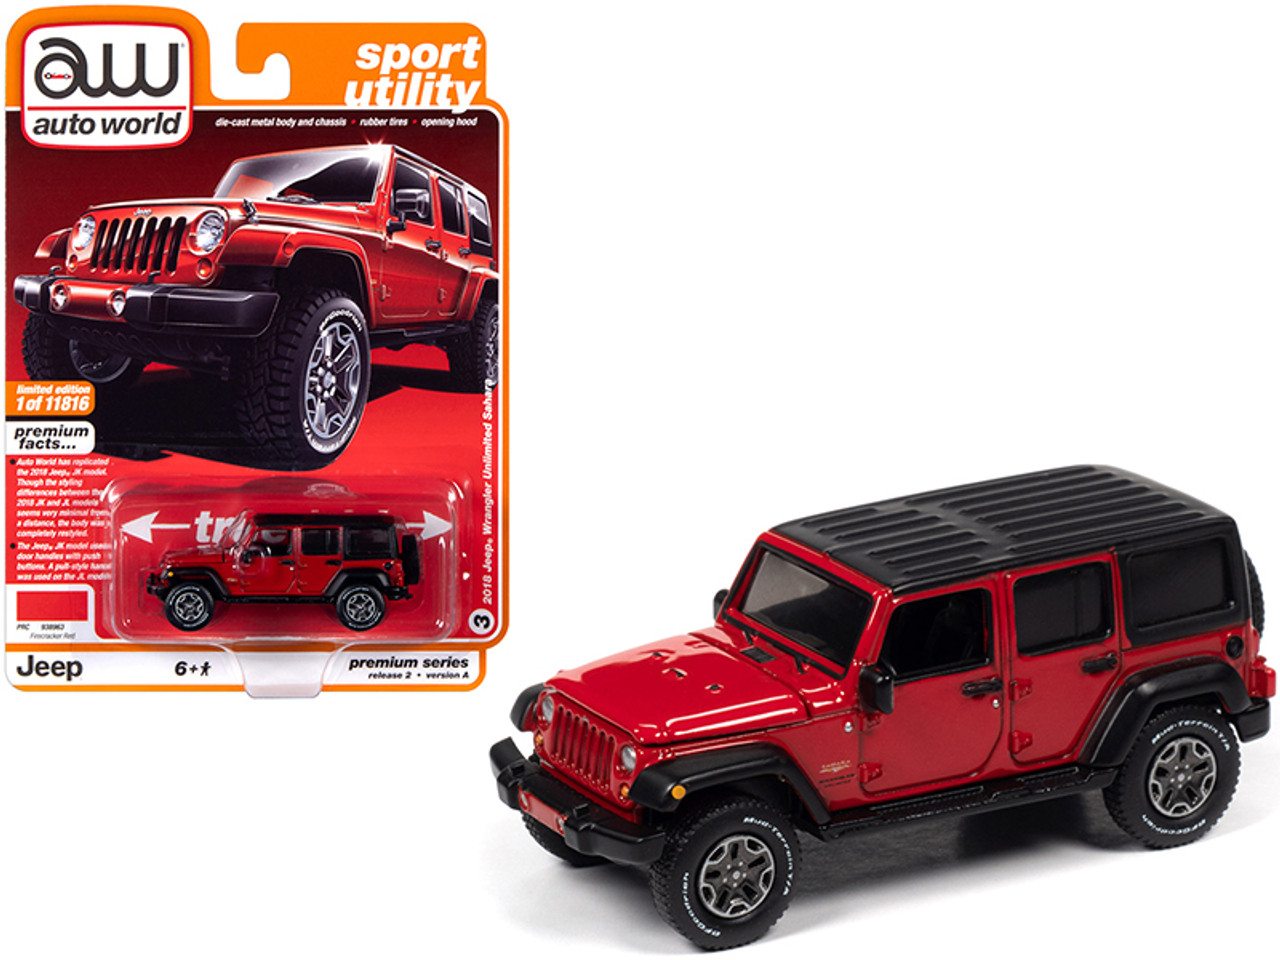 2018 Jeep Wrangler Unlimited Sahara (4-door) Firecracker Red with Black Top  